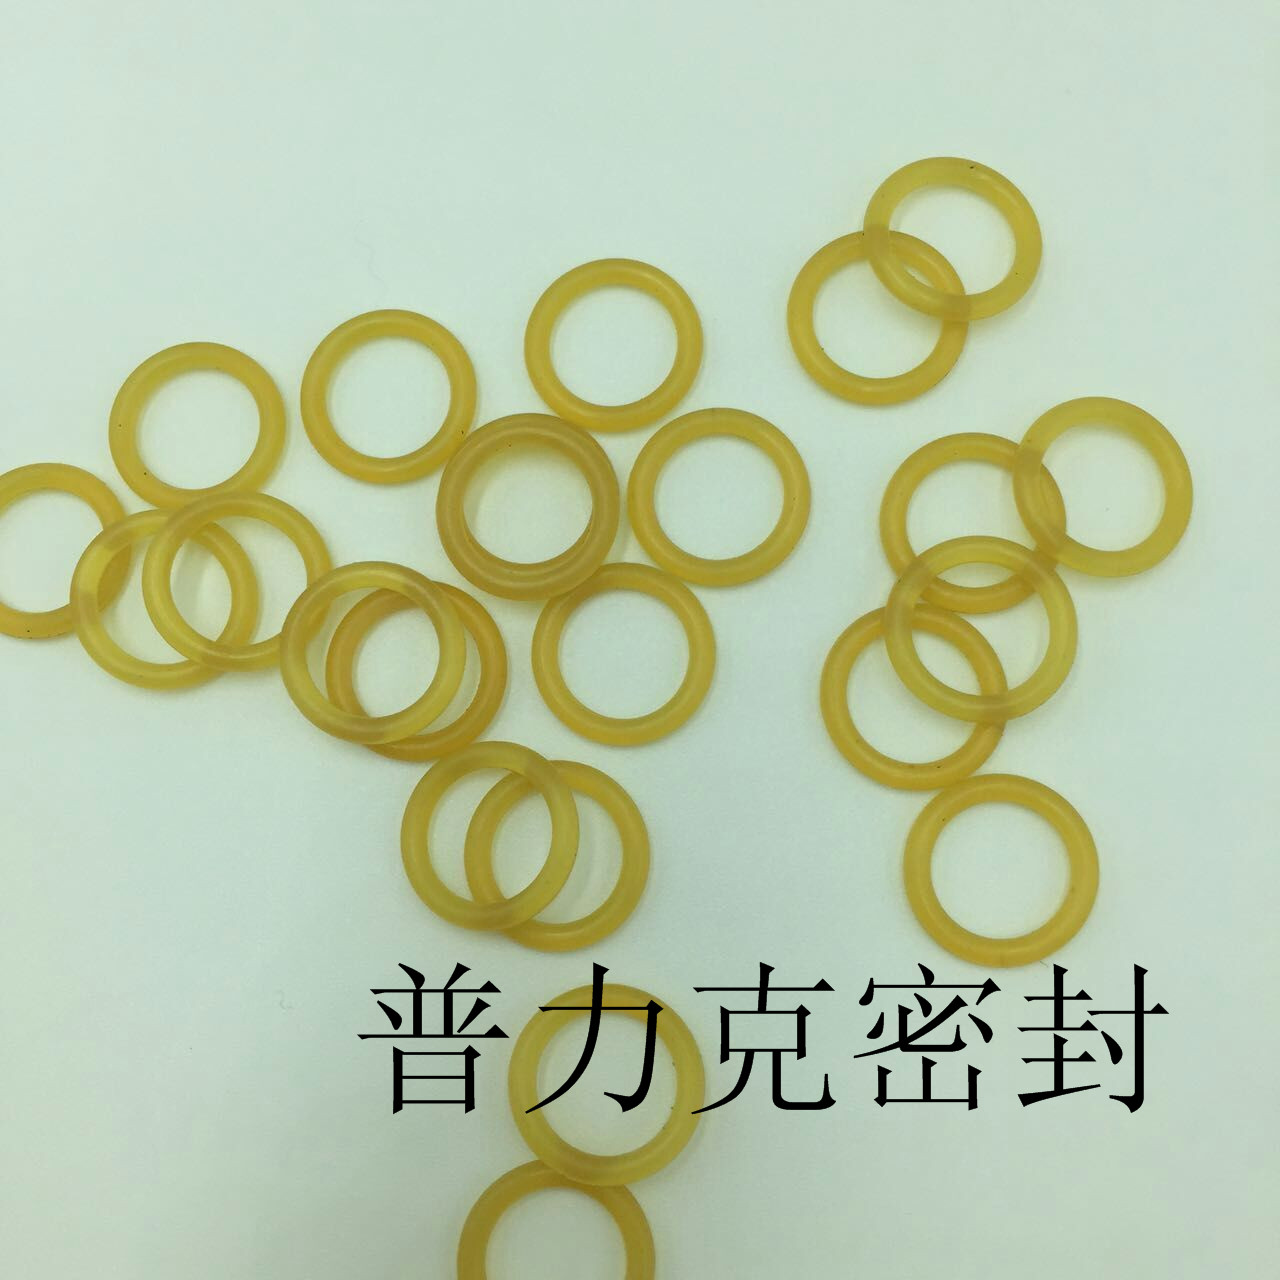 香港进口水磨橡胶圈供应优惠促销